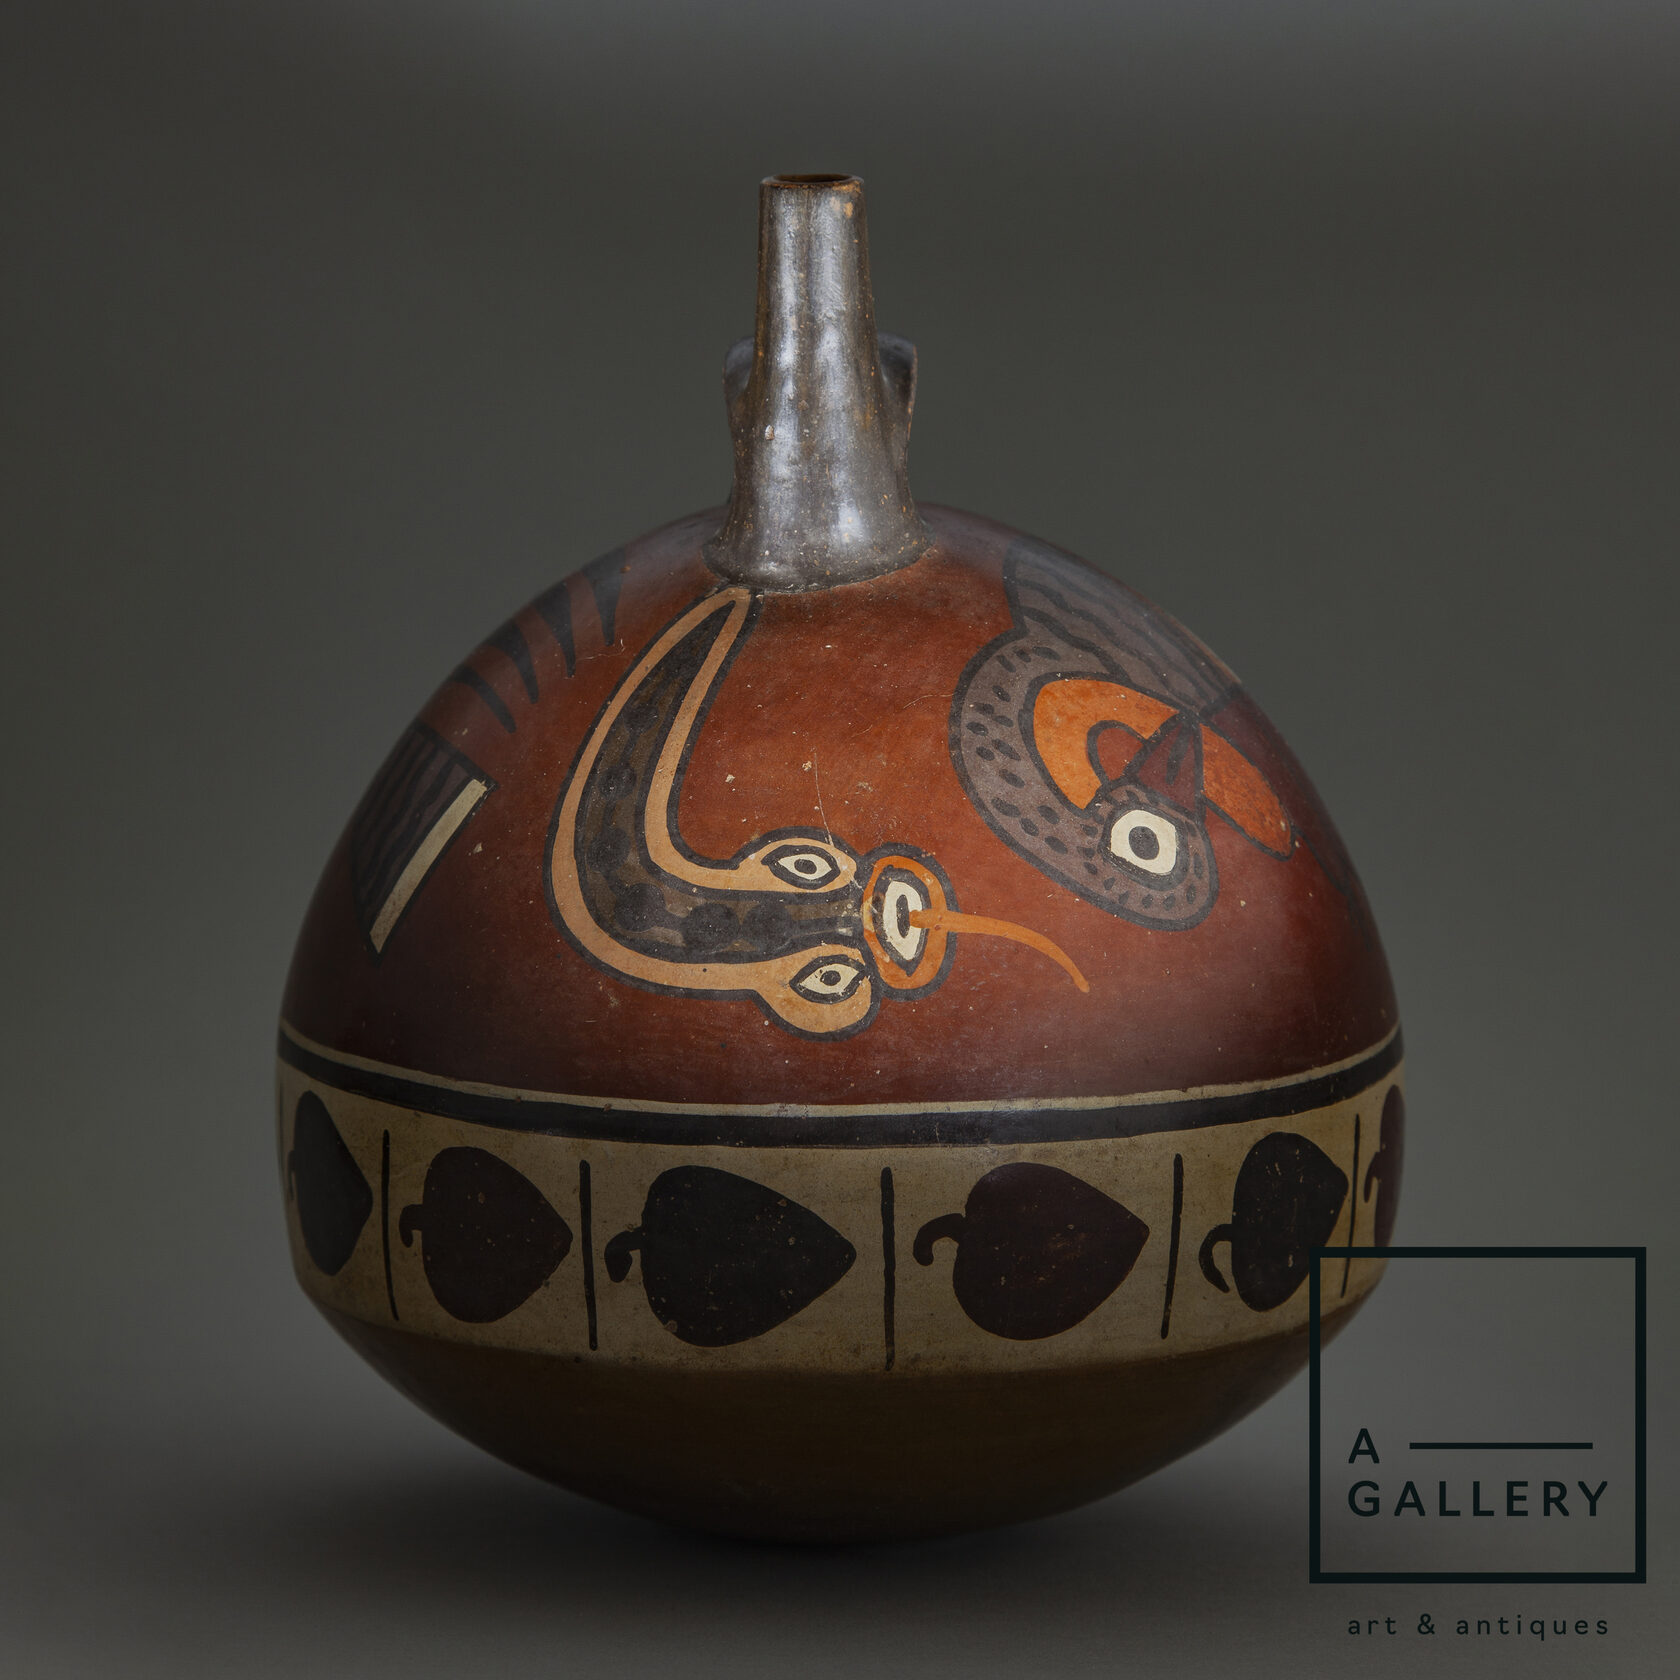 Шаровидный сосуд, Перу, культура Наска, 0-600 гг. н.э. Коллекция A-Gallery, Москва.